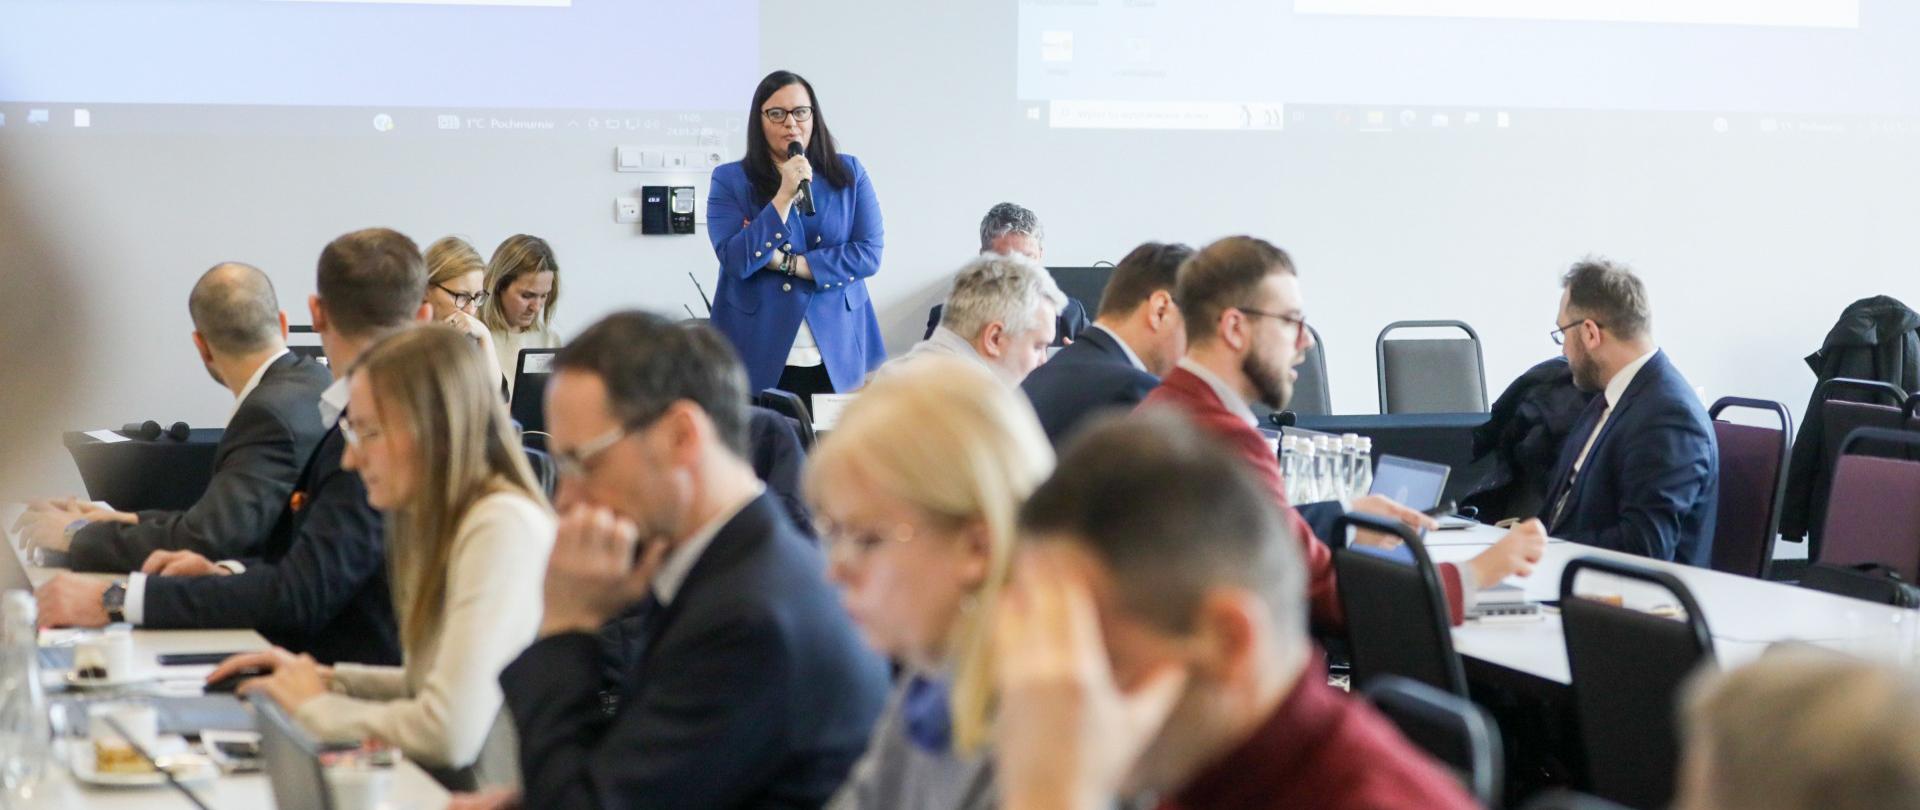 W sali konferencyjnej wiceminister Małgorzata Jarosińska-Jedynak stoi z mikrofonem. Przed nią siedzą przy stołach osoby.